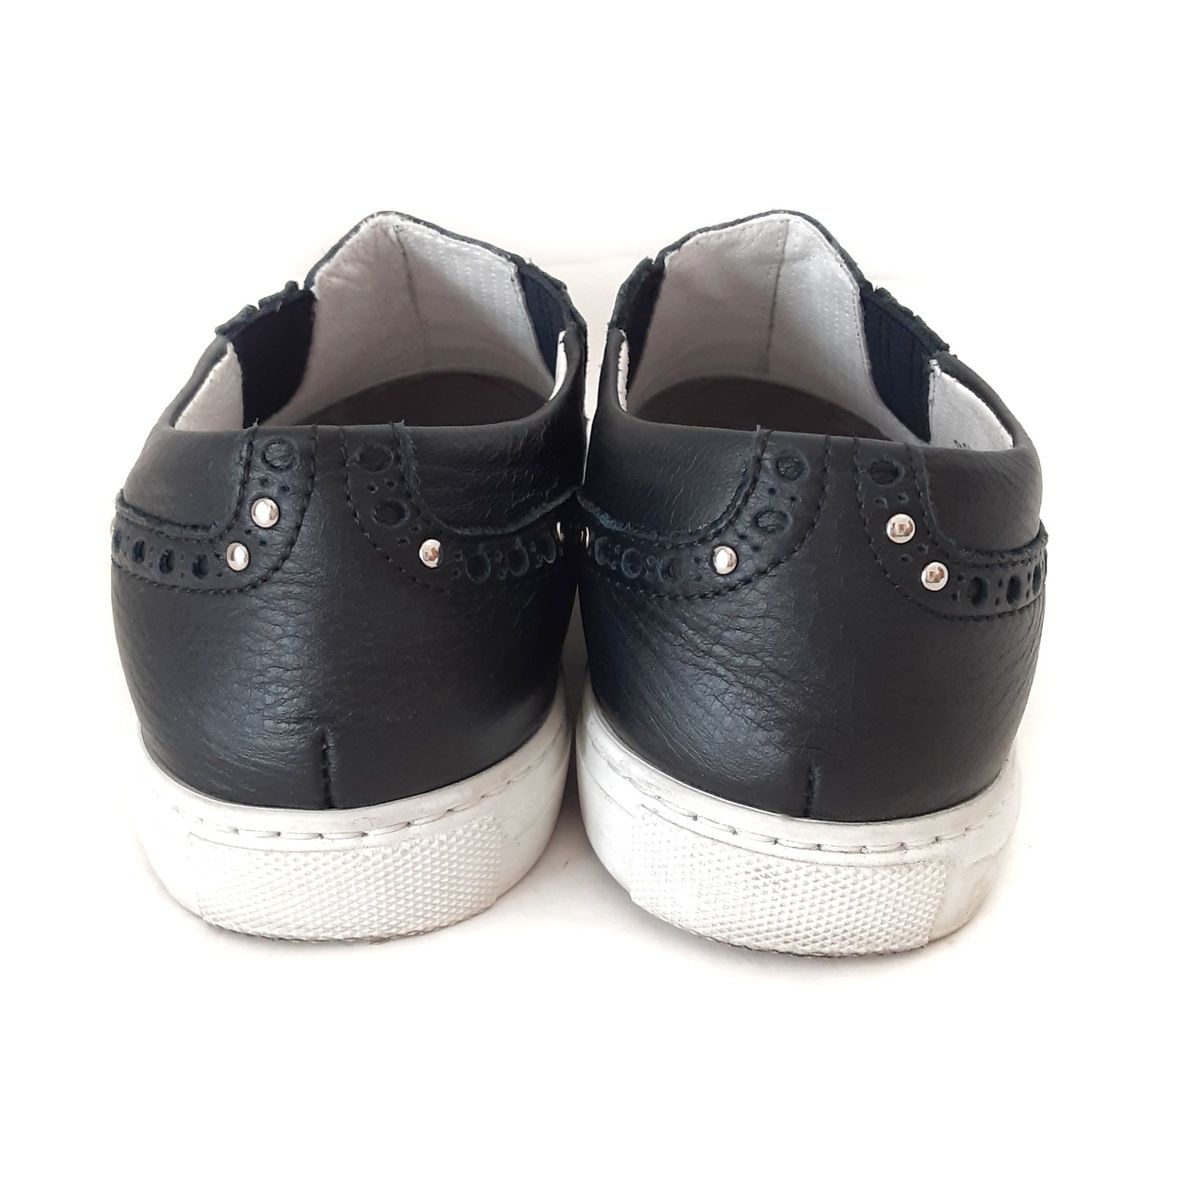 直送商品︎最終価格サルトル ウィングチップスリッポン 靴